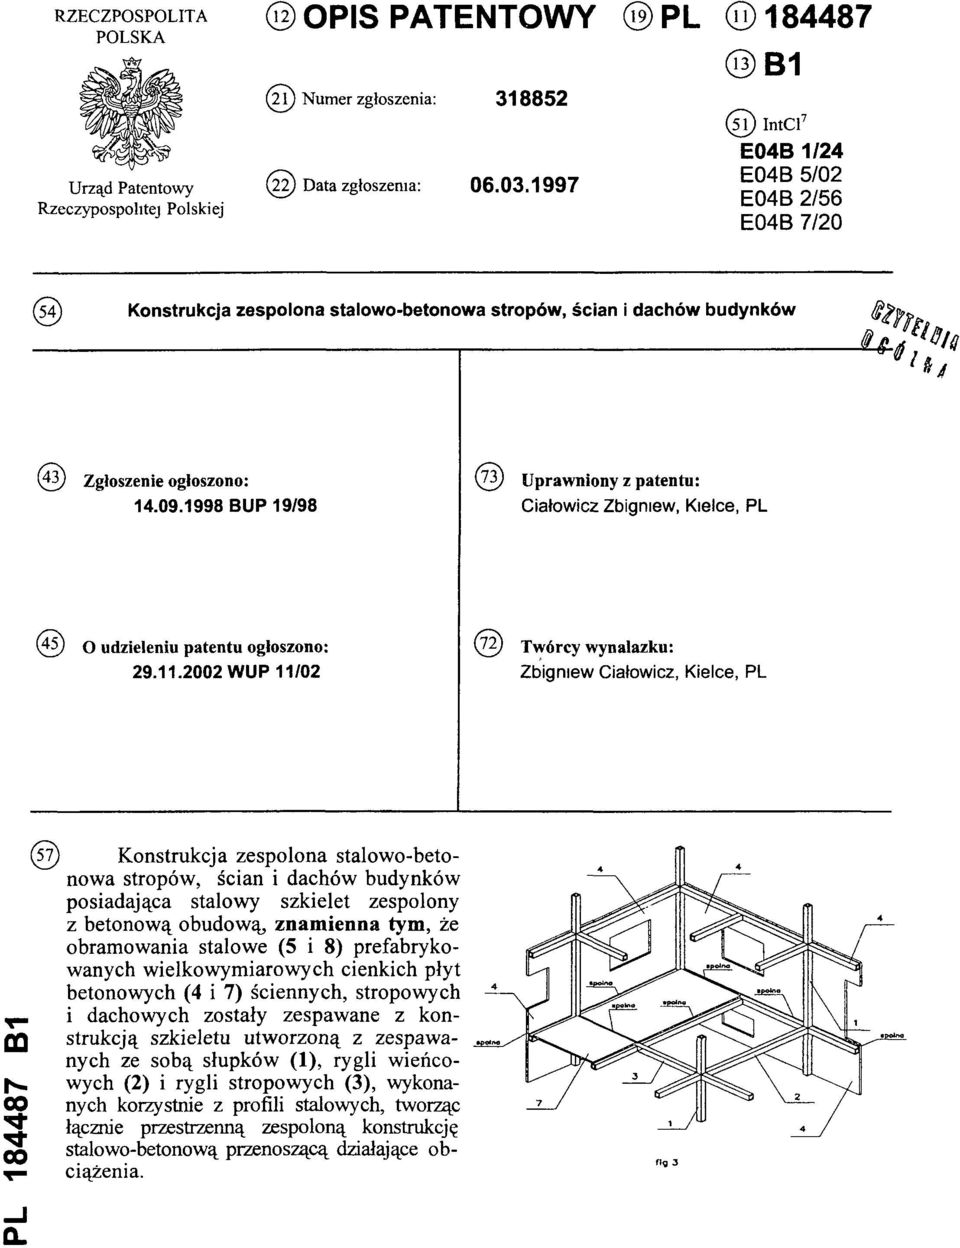 1998 BUP 19/98 (73) Uprawniony z patentu: Ciałowicz Zbigniew, Kielce, PL (45) O udzieleniu patentu ogłoszono: 29.11.